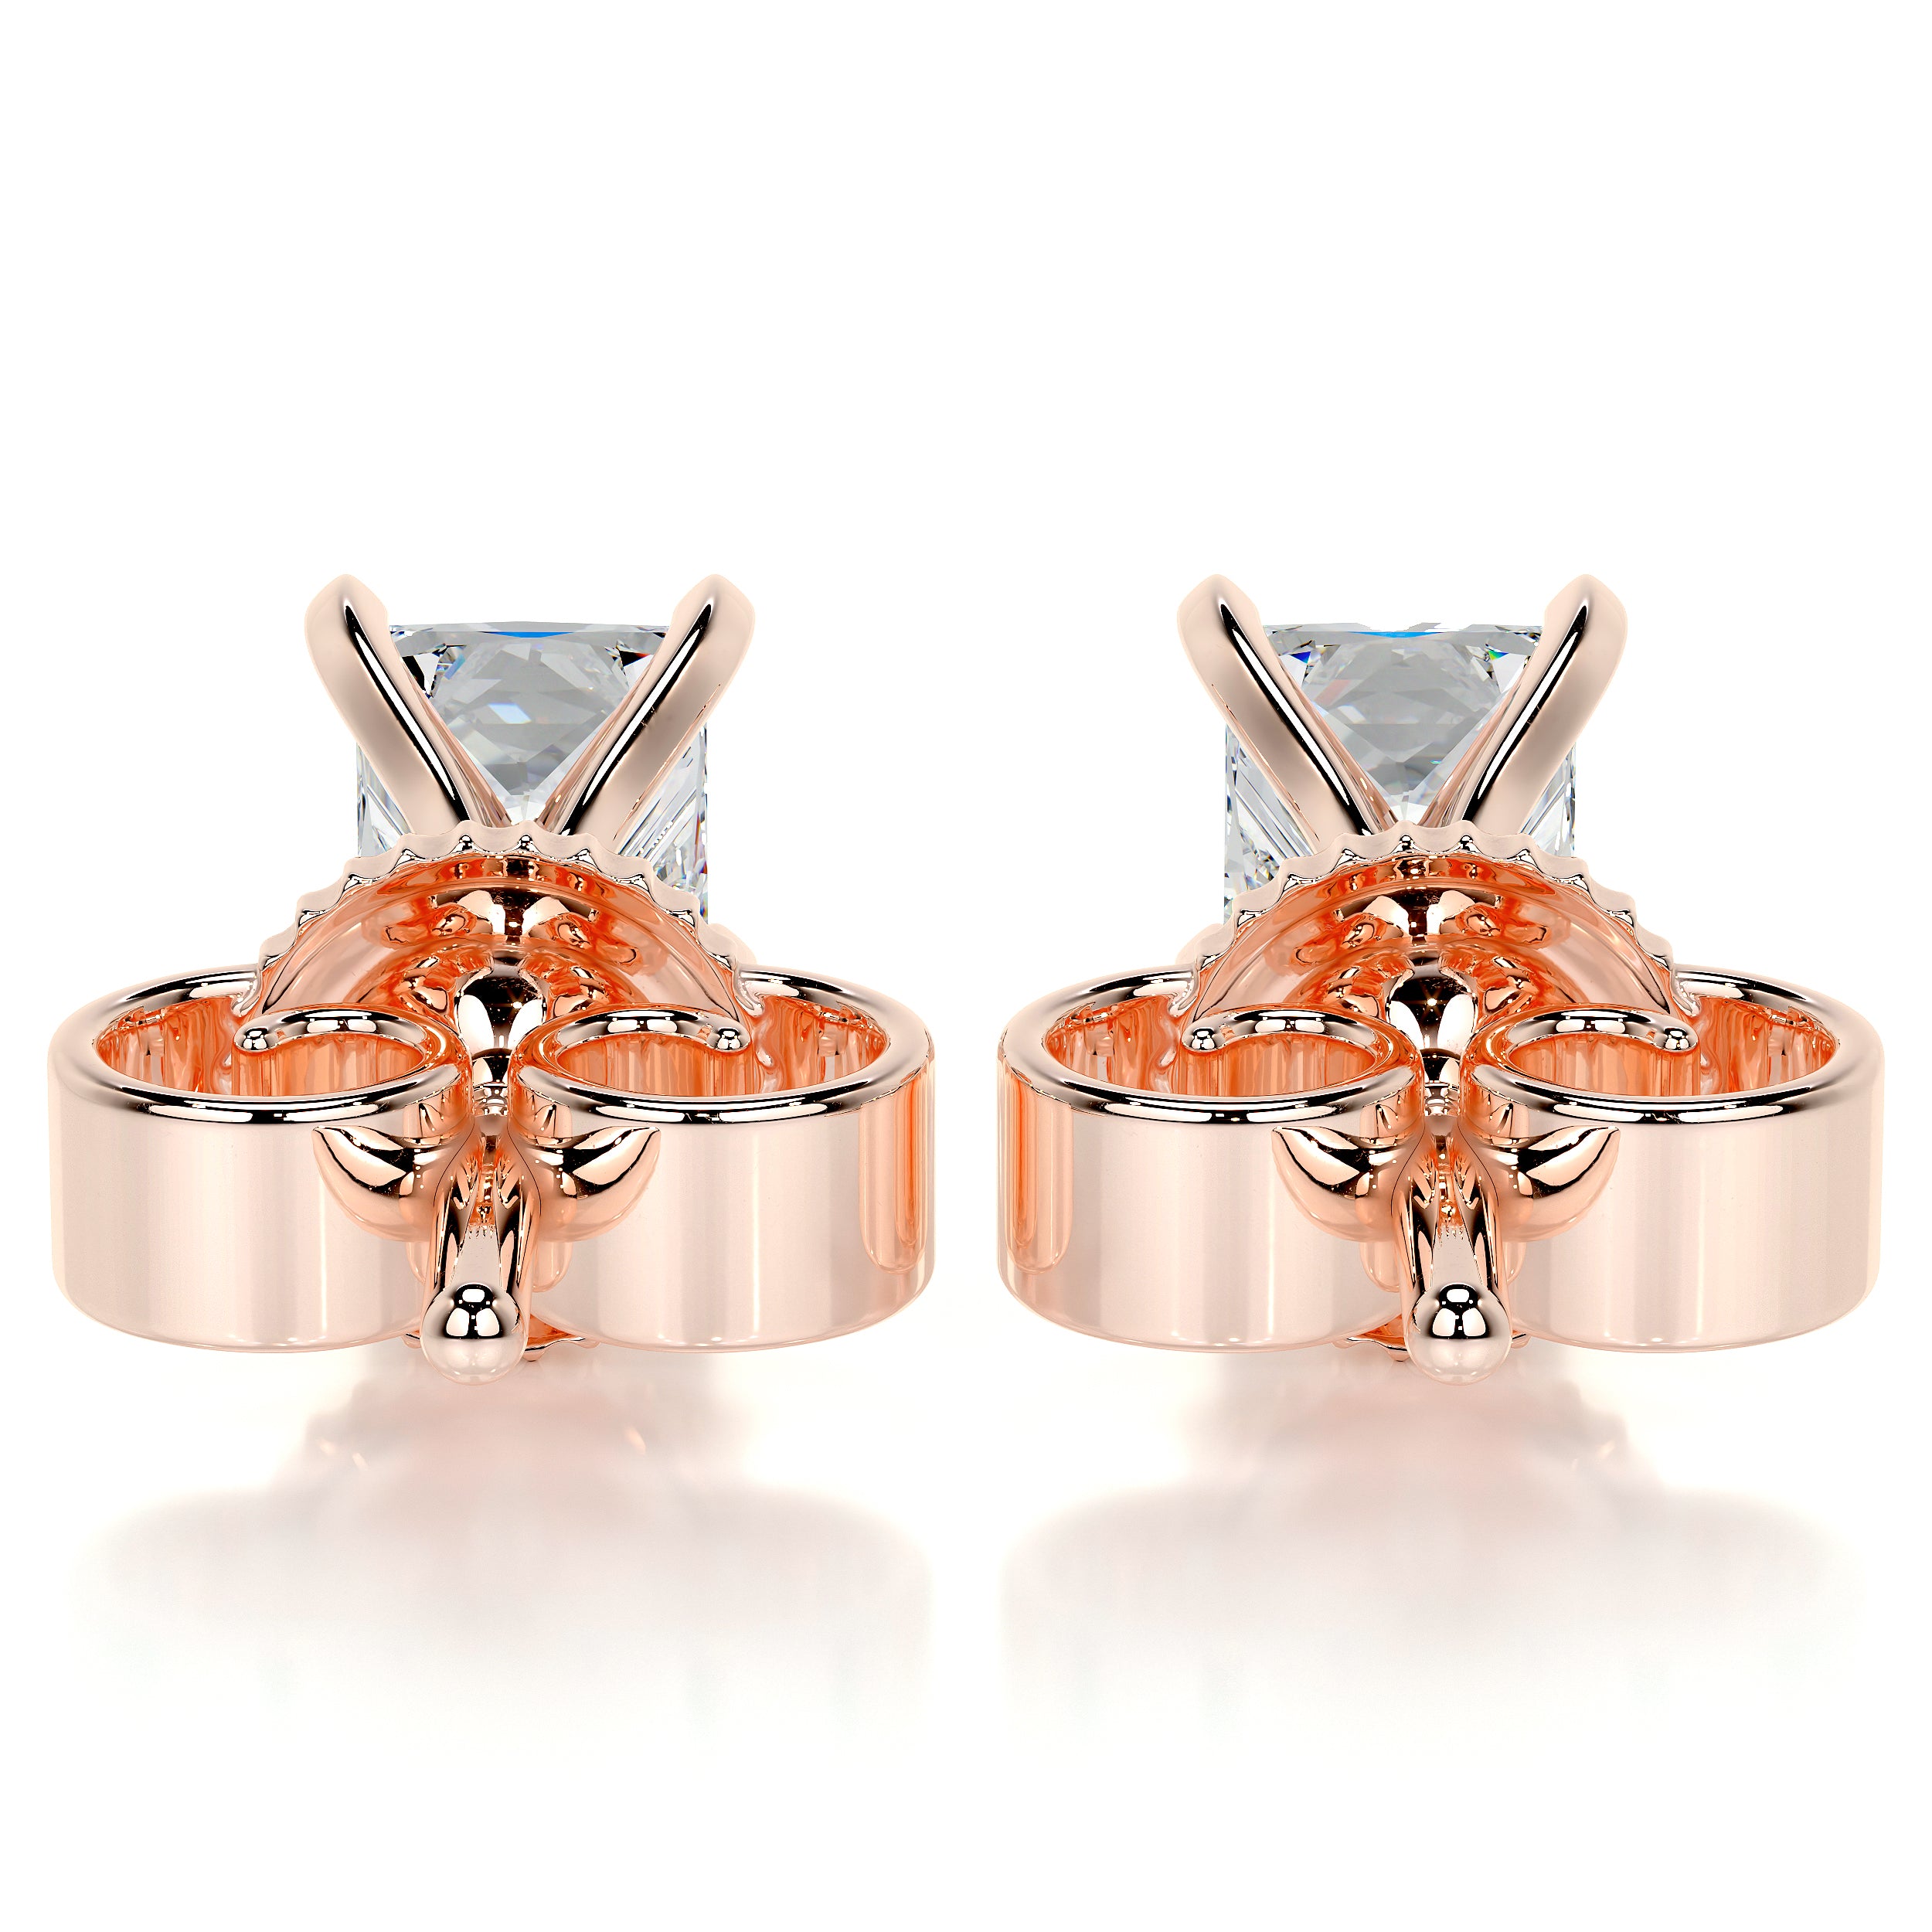 Magnolia Diamond Earrings -14K Rose Gold